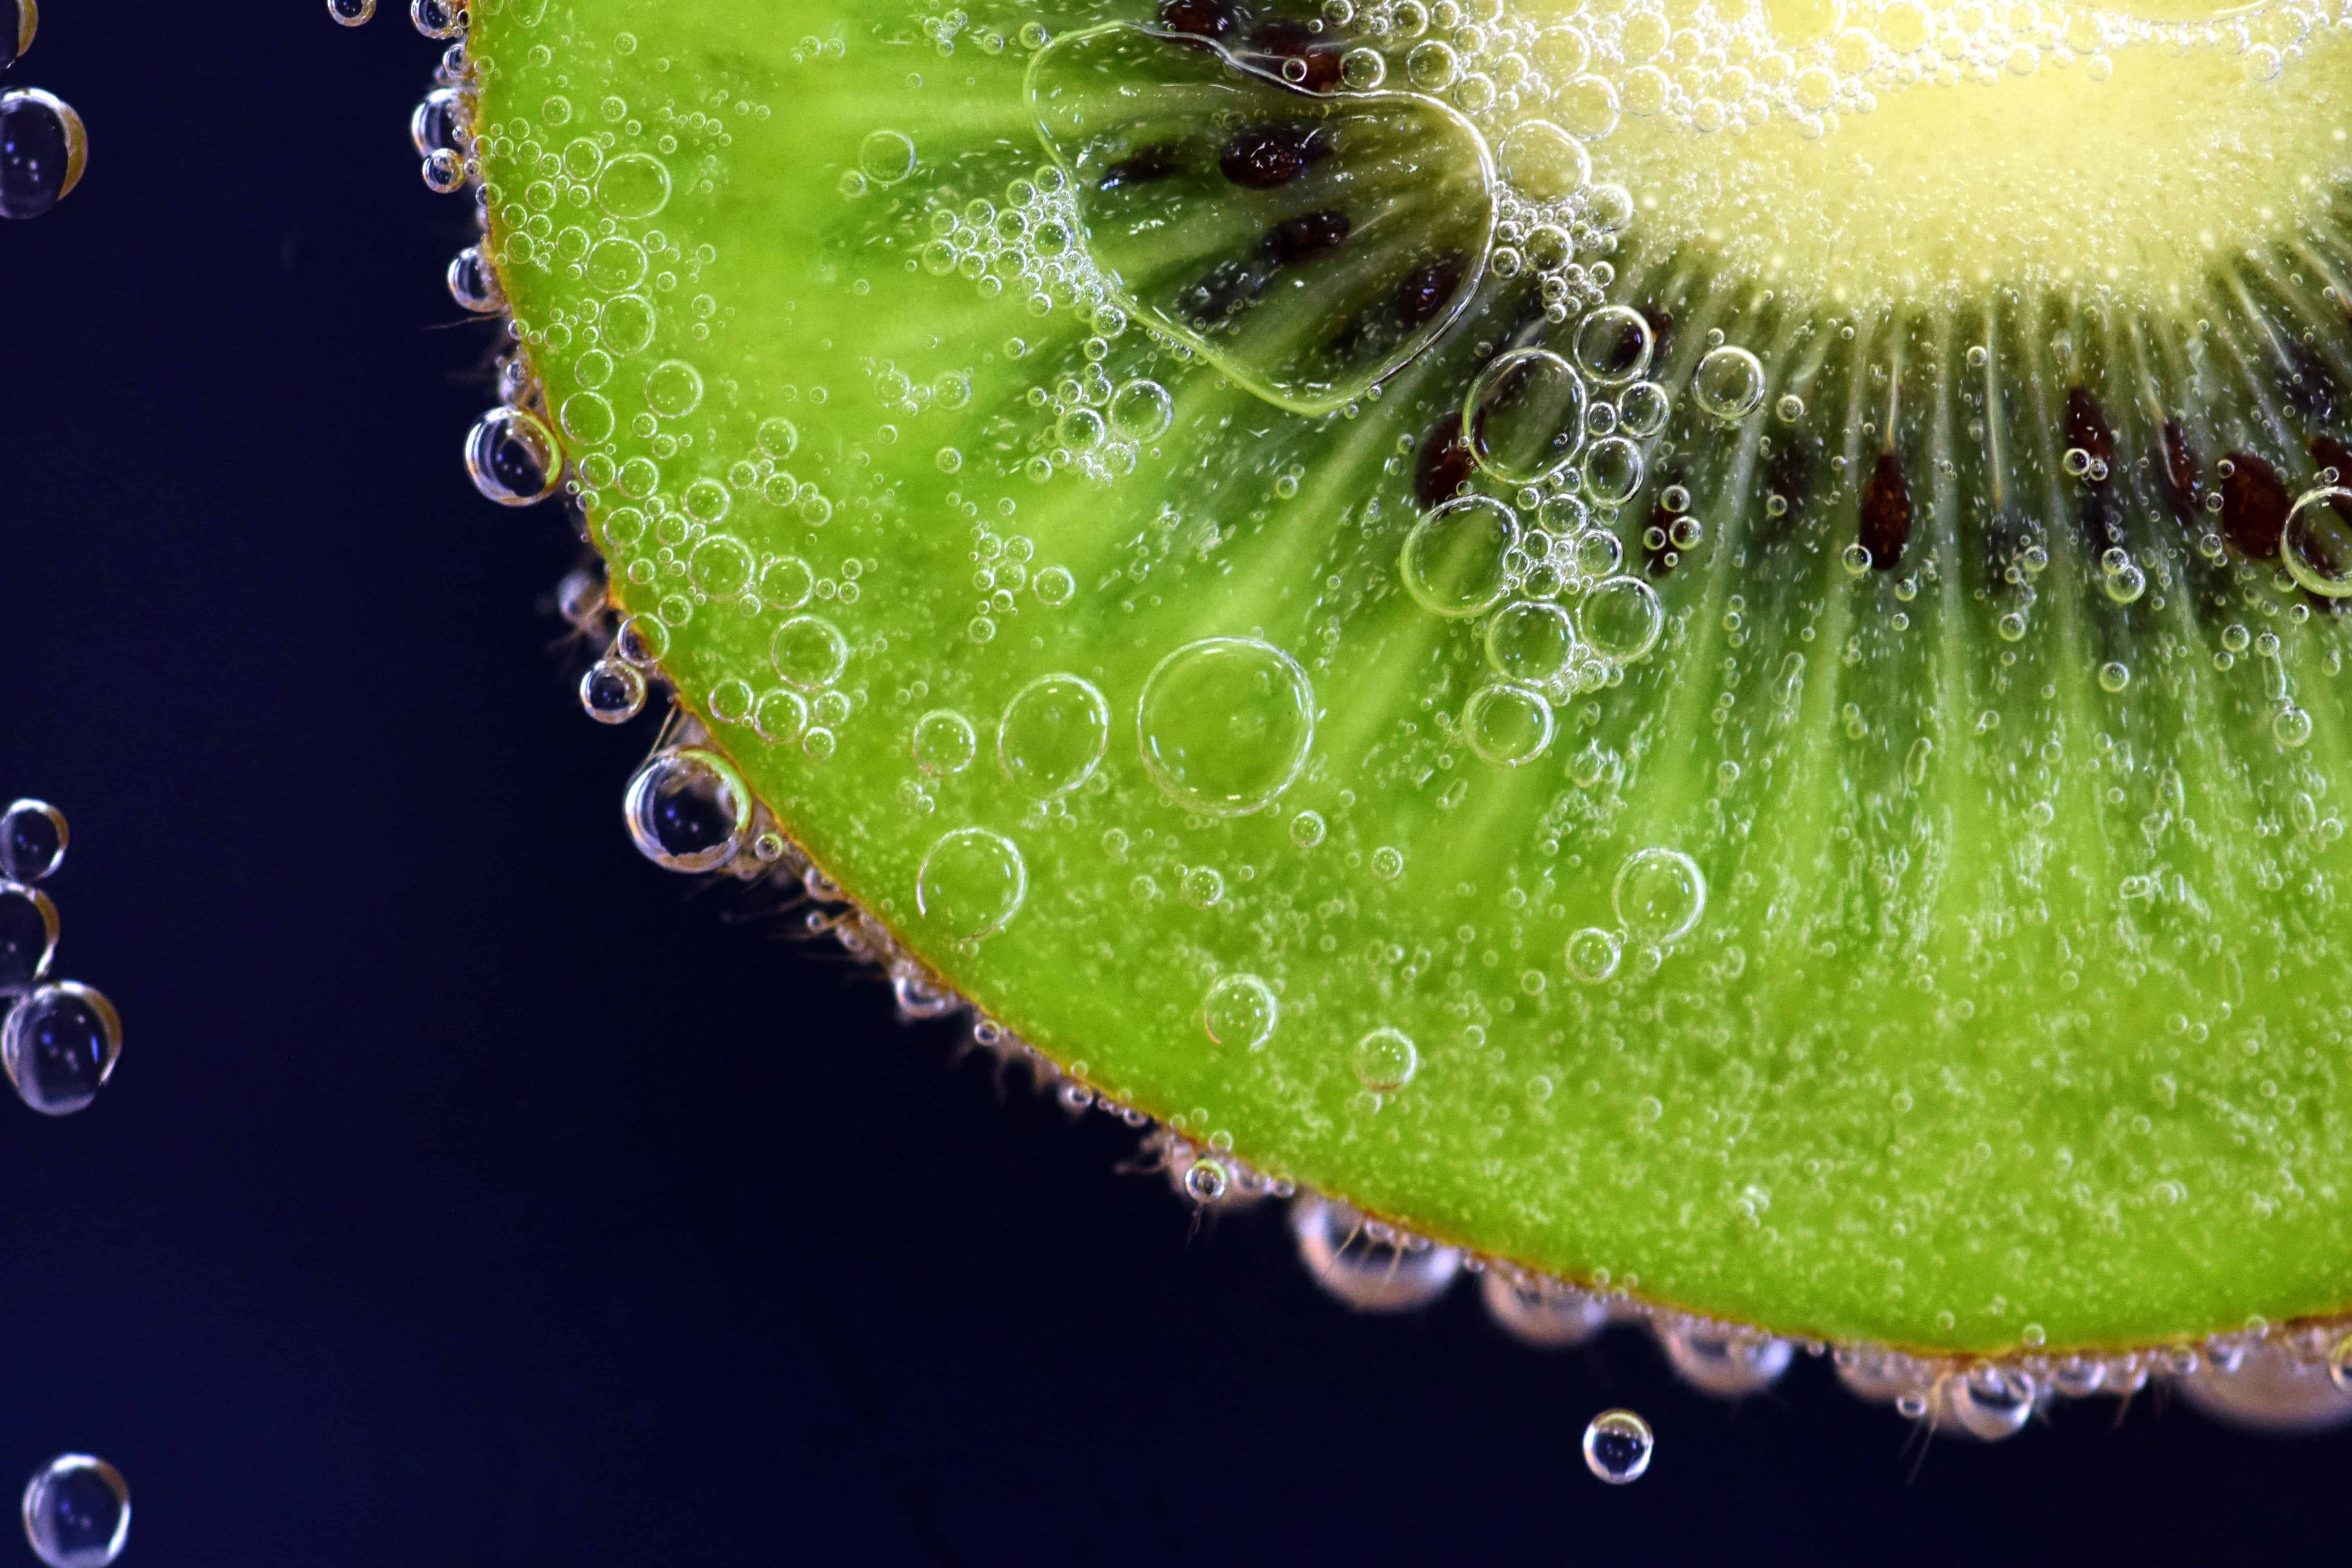 Free picture: dew, droplet, fruit, bubble, macro, liquid, wet, fruit ...